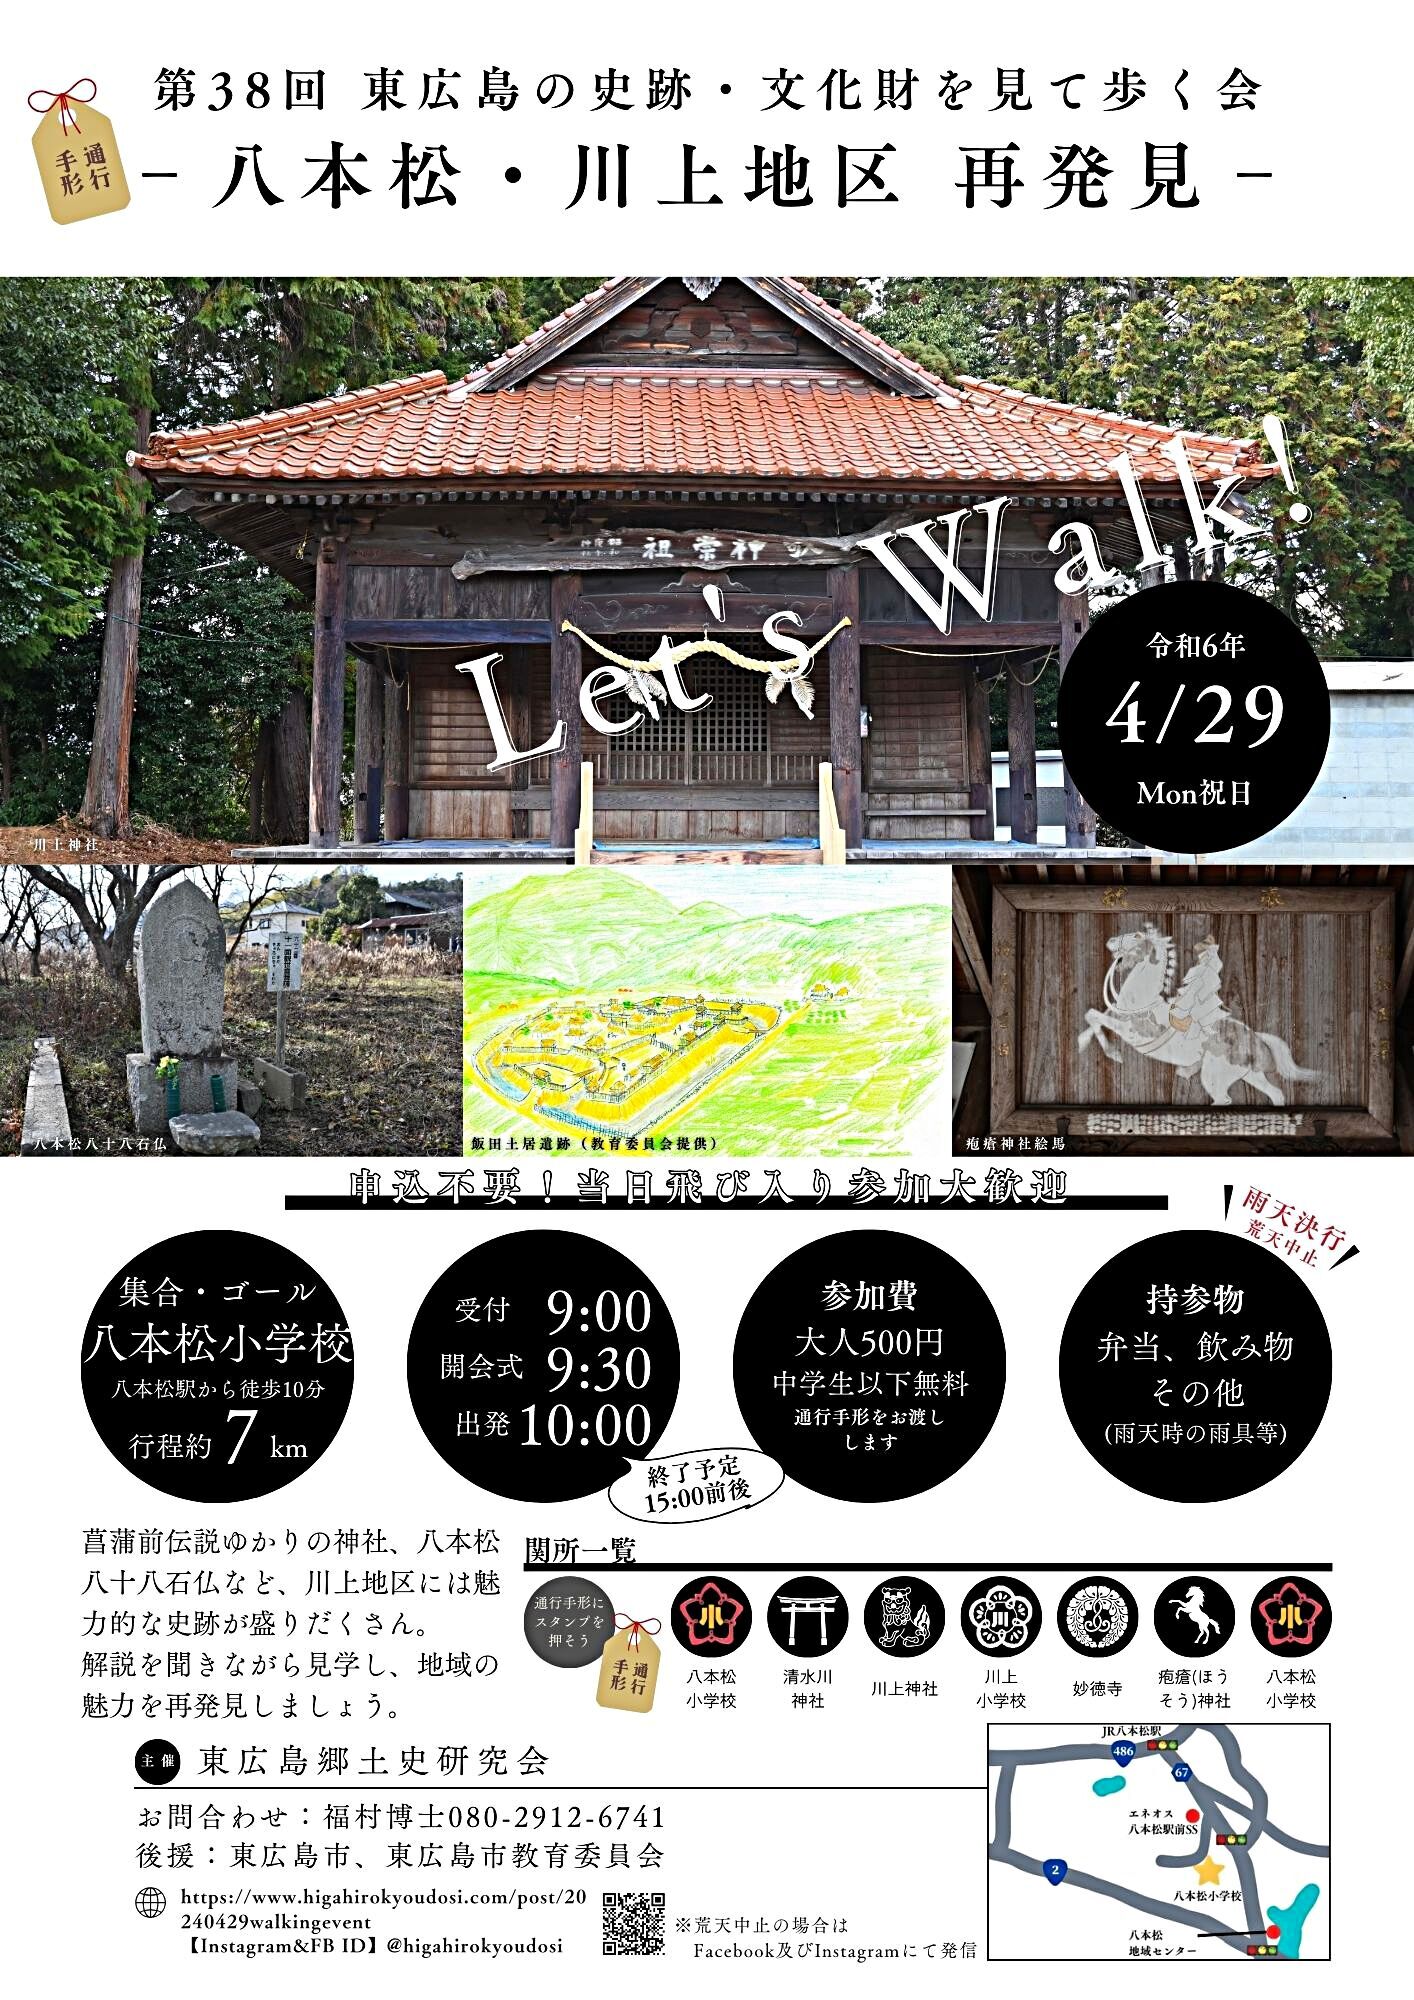 【4月29日】今年も「歩く会」を開催します【八本松町川上地区】【pickup】